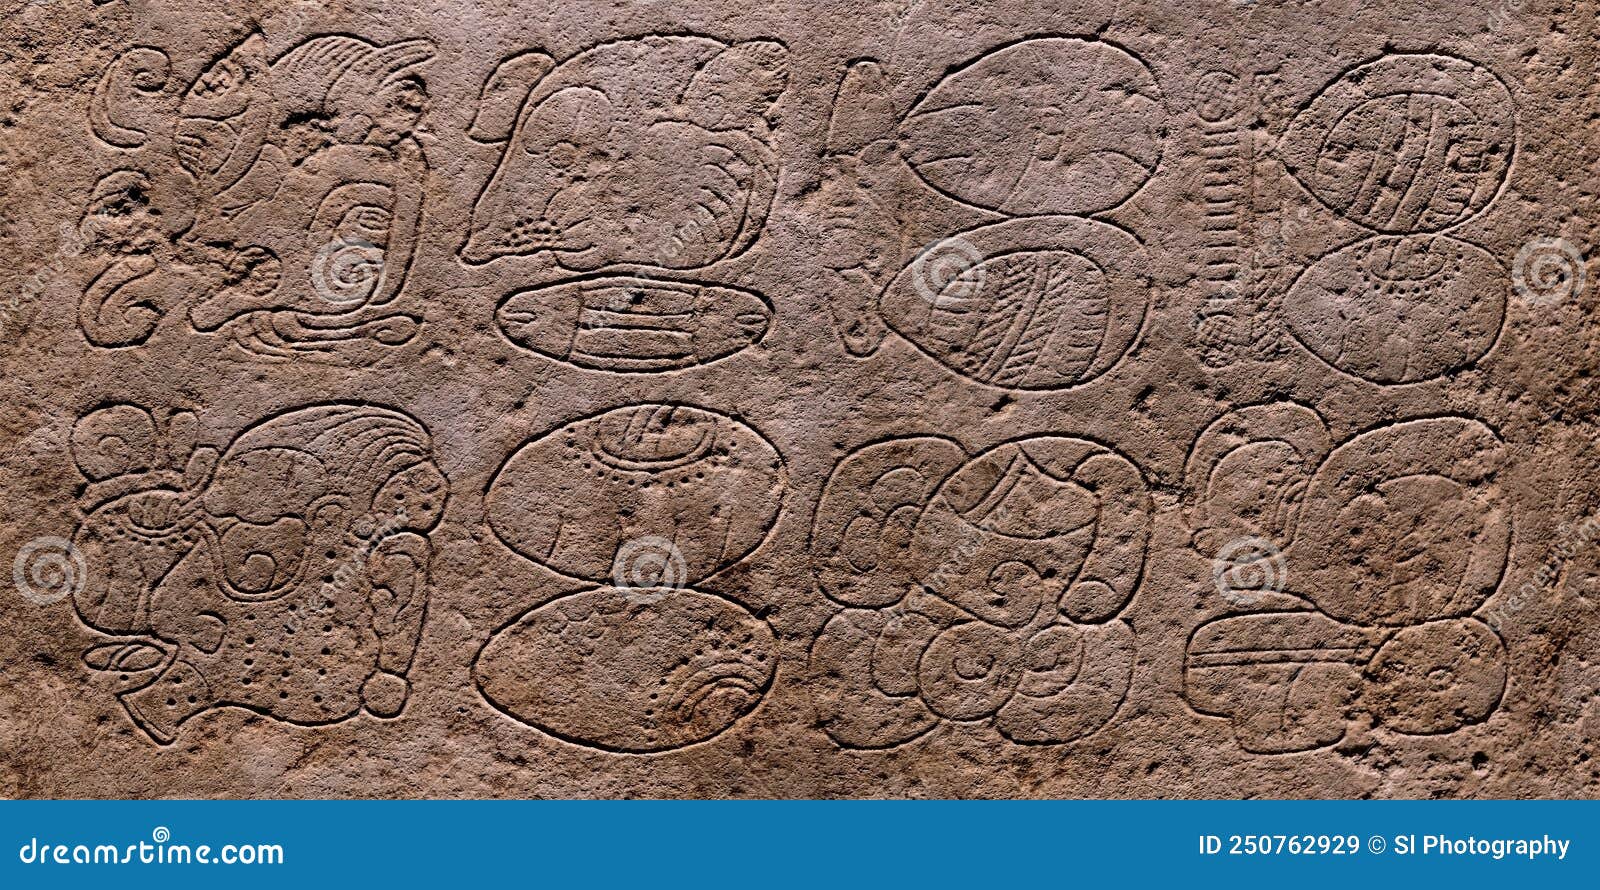 maya hierogplyphics carving, mexico city